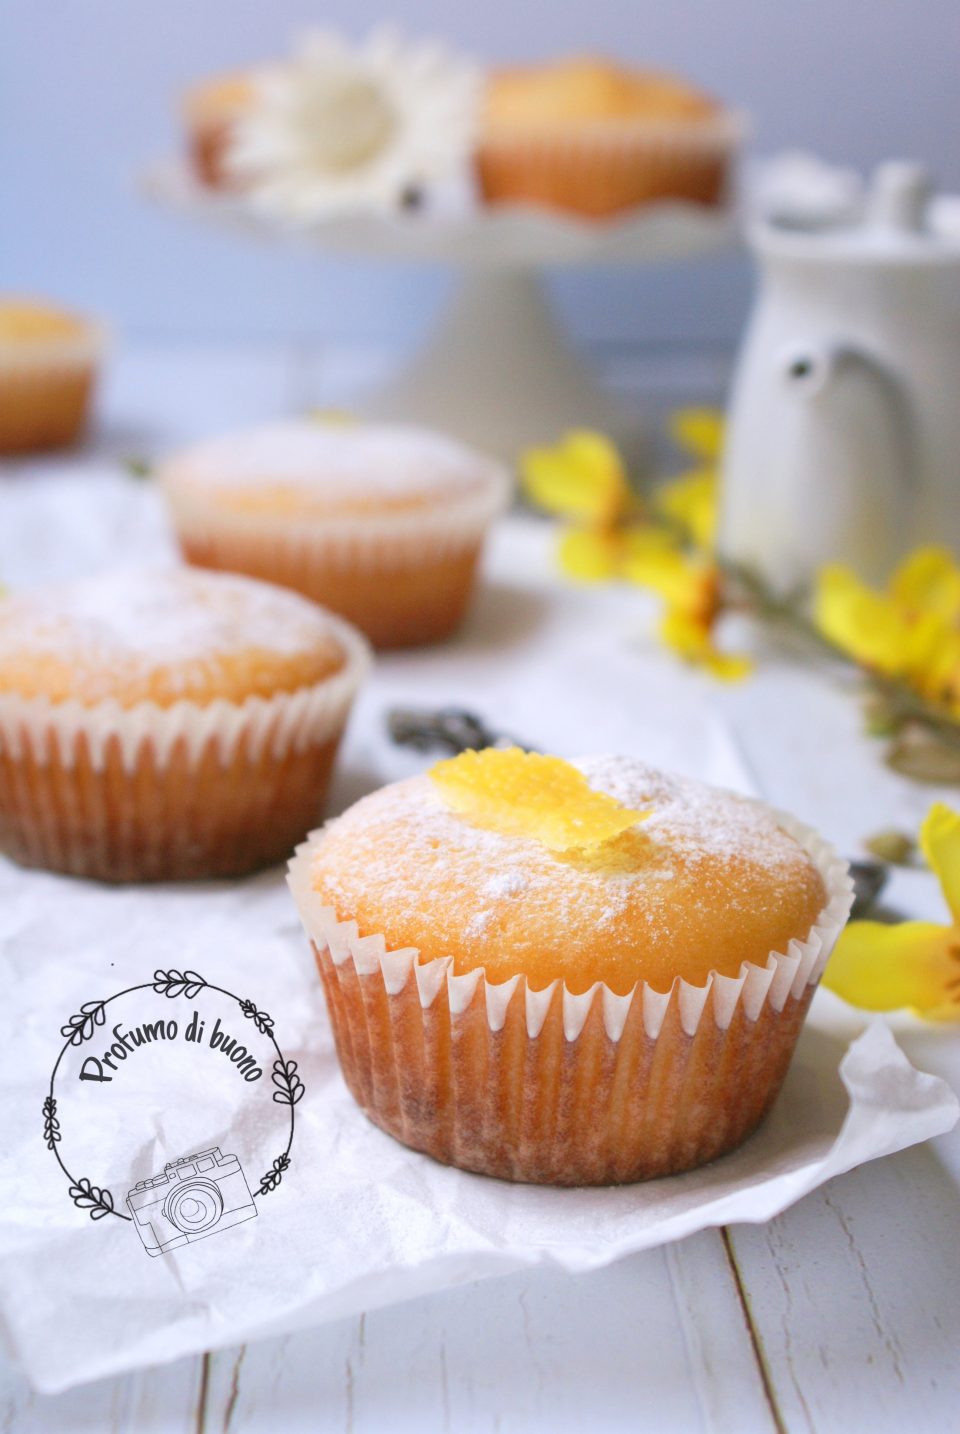 Muffin senza glutine di ricotta al limone con zucchero a velo